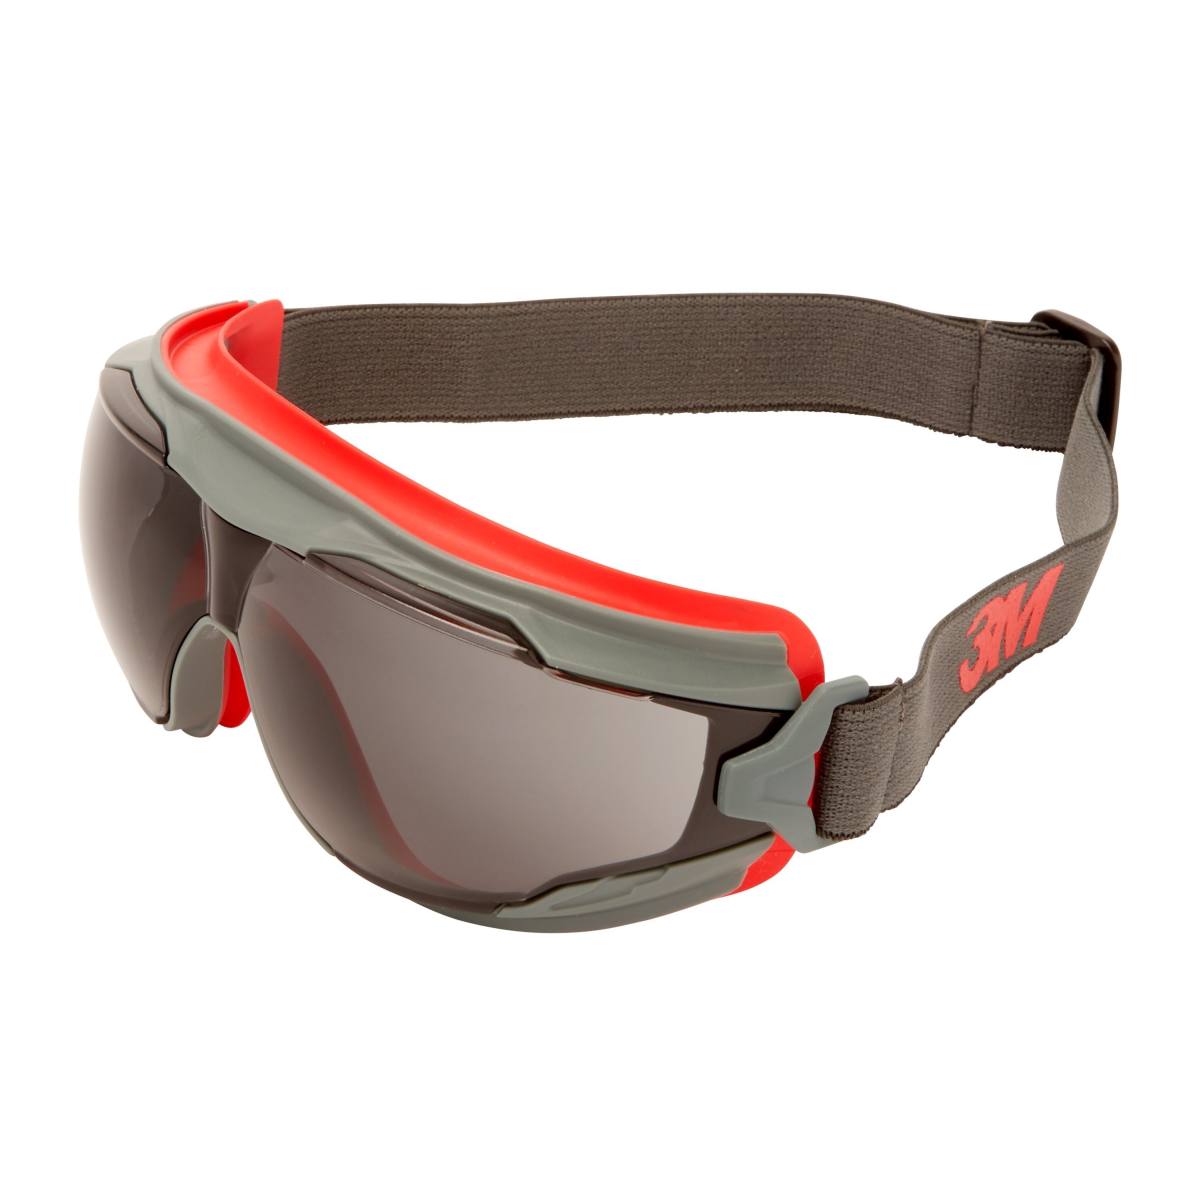 3M Gafas de visión total GoggleGear 500 GG502SGAF-EU, montura gris rojiza, lentes grises, cinta de neopreno negra para la cabeza